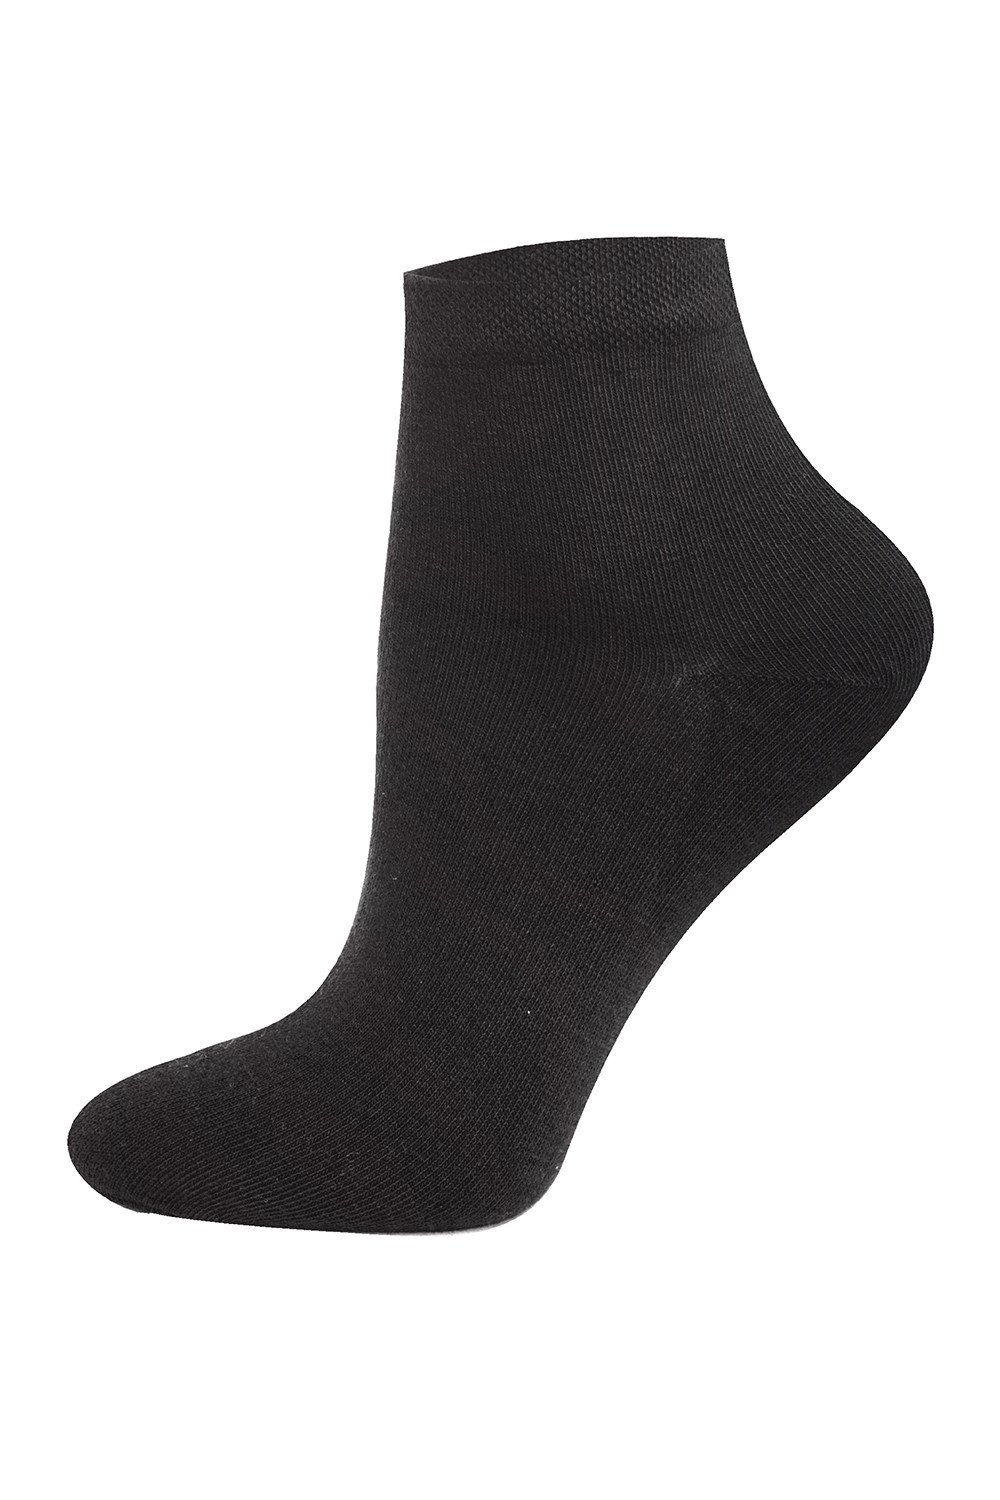 Шкарпетки жіночі Italian Fashion K22, 35-37, темно-сірий